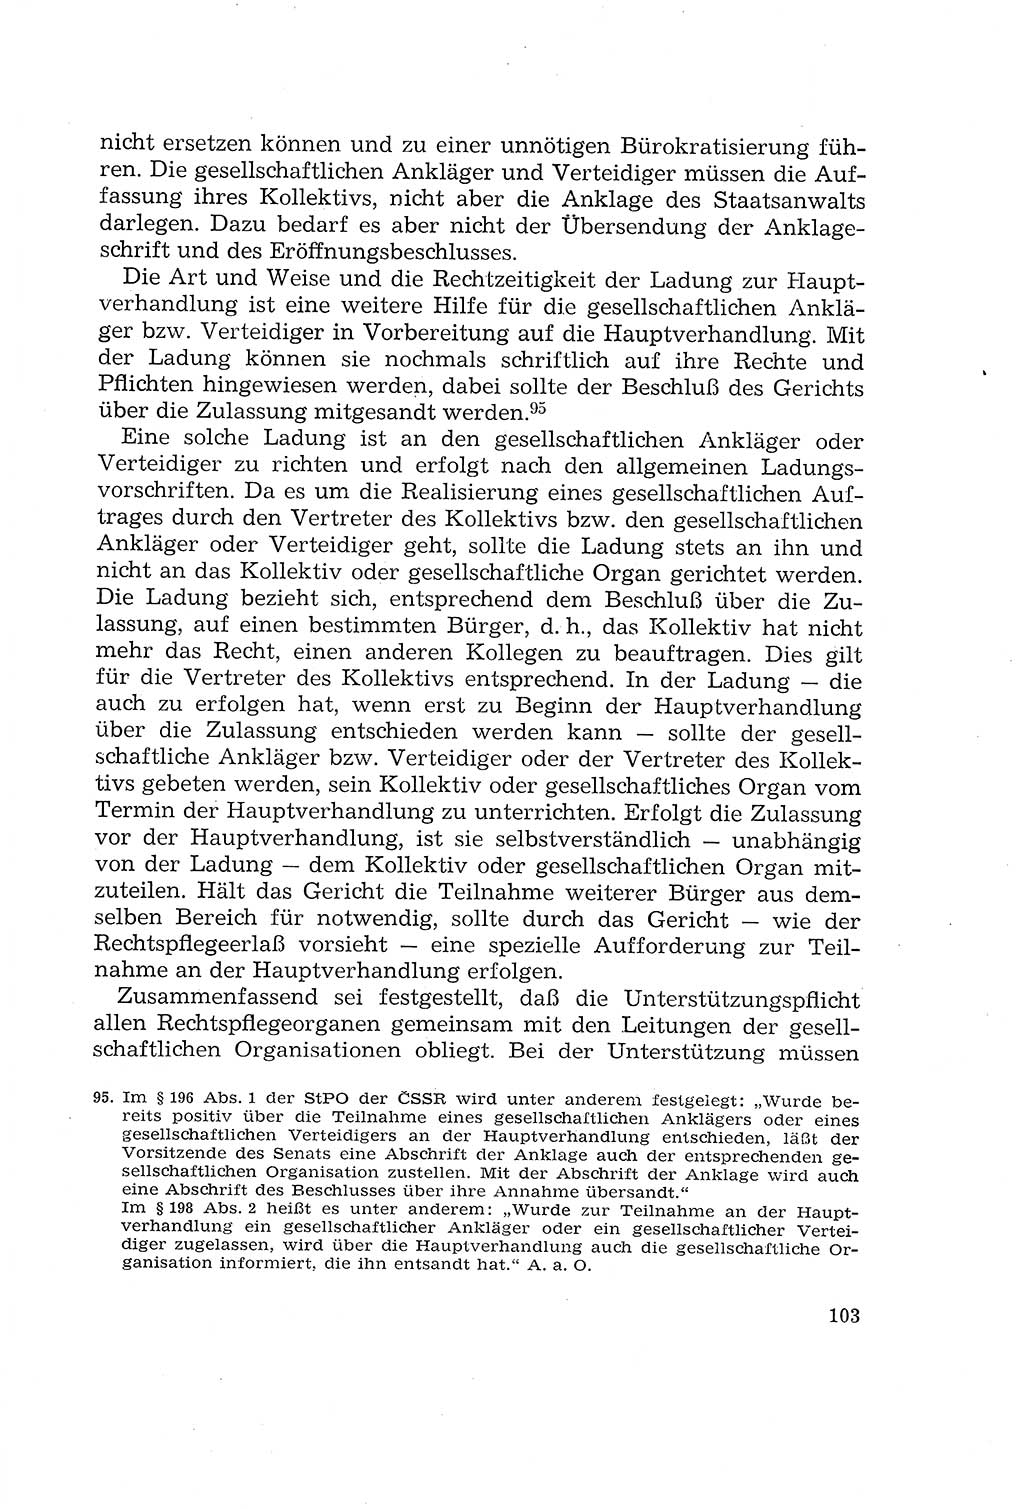 Die Mitwirkung der Werktätigen am Strafverfahren [Deutsche Demokratische Republik (DDR)] 1966, Seite 103 (Mitw. Str.-Verf. DDR 1966, S. 103)